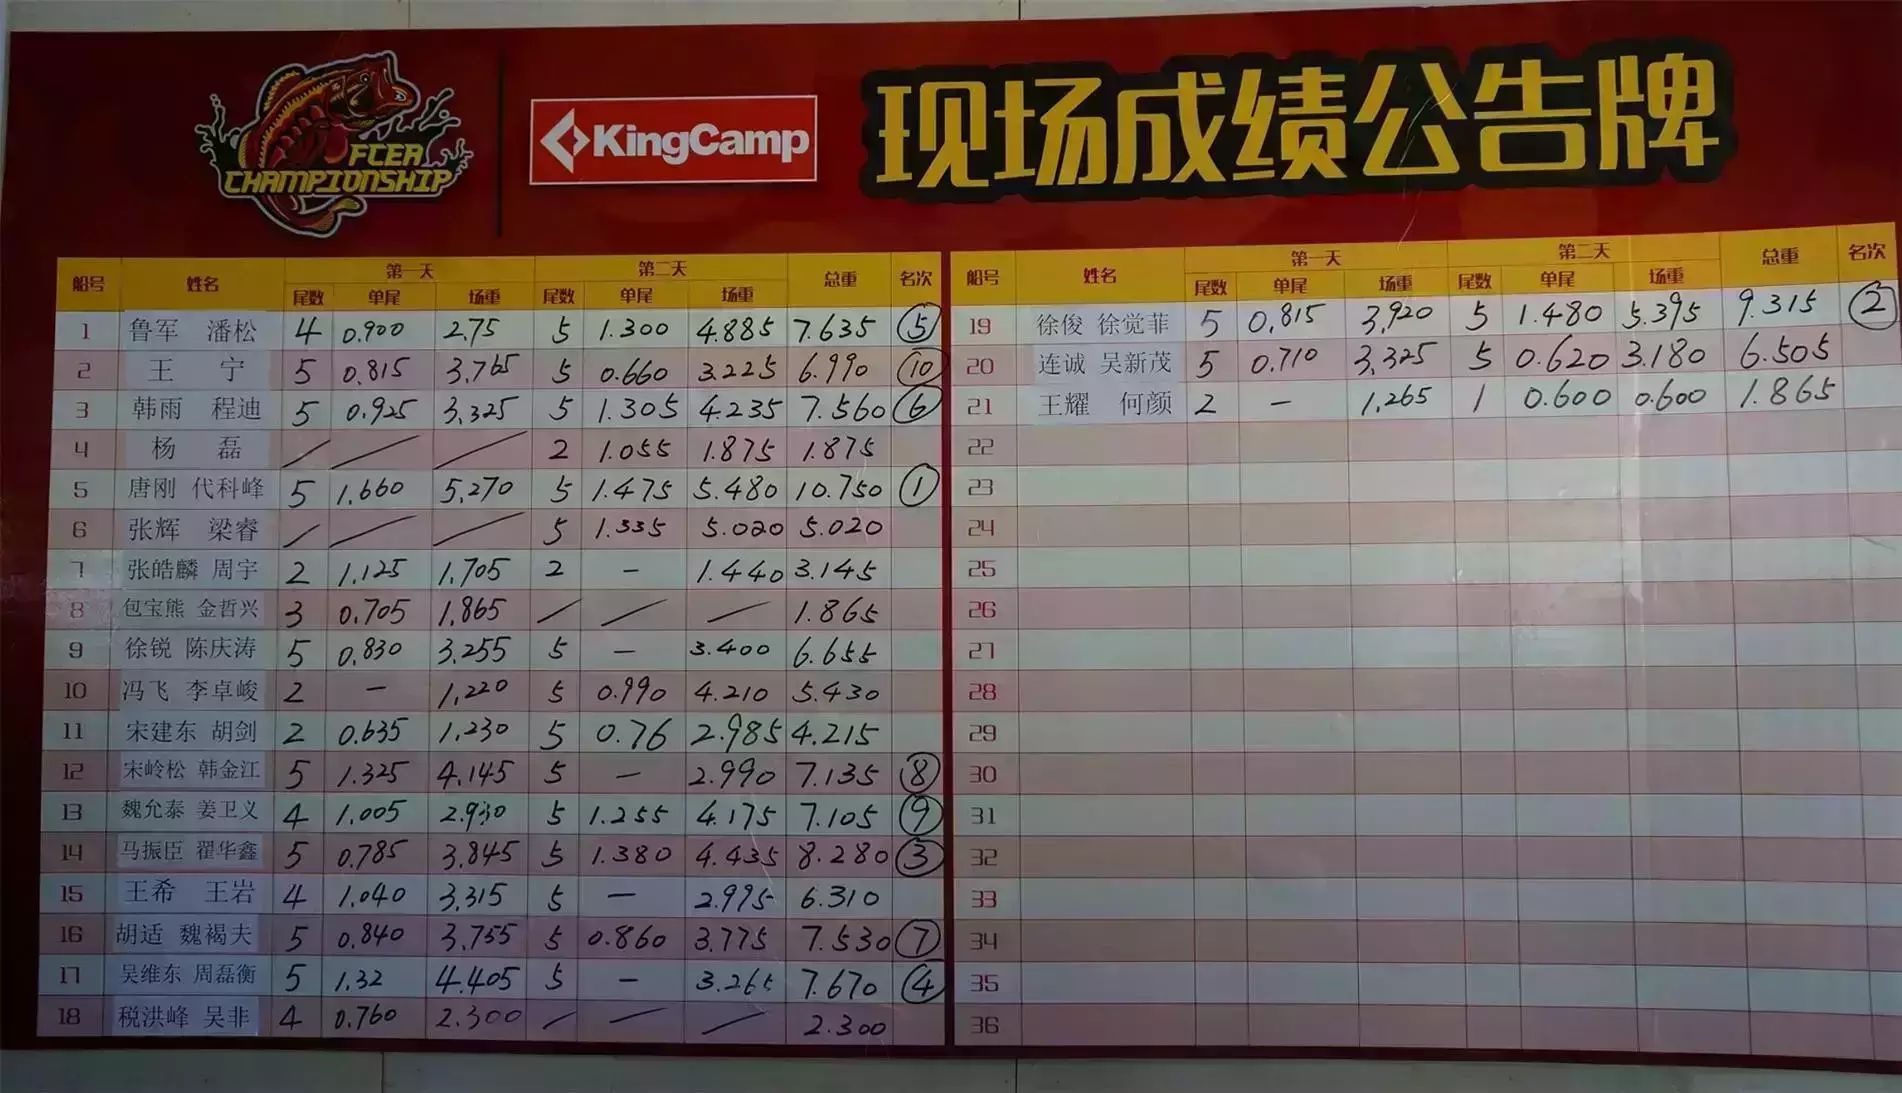 KingCamp2015FCEA 路亚精英锦标赛 红海站成绩（不多说，看数据）